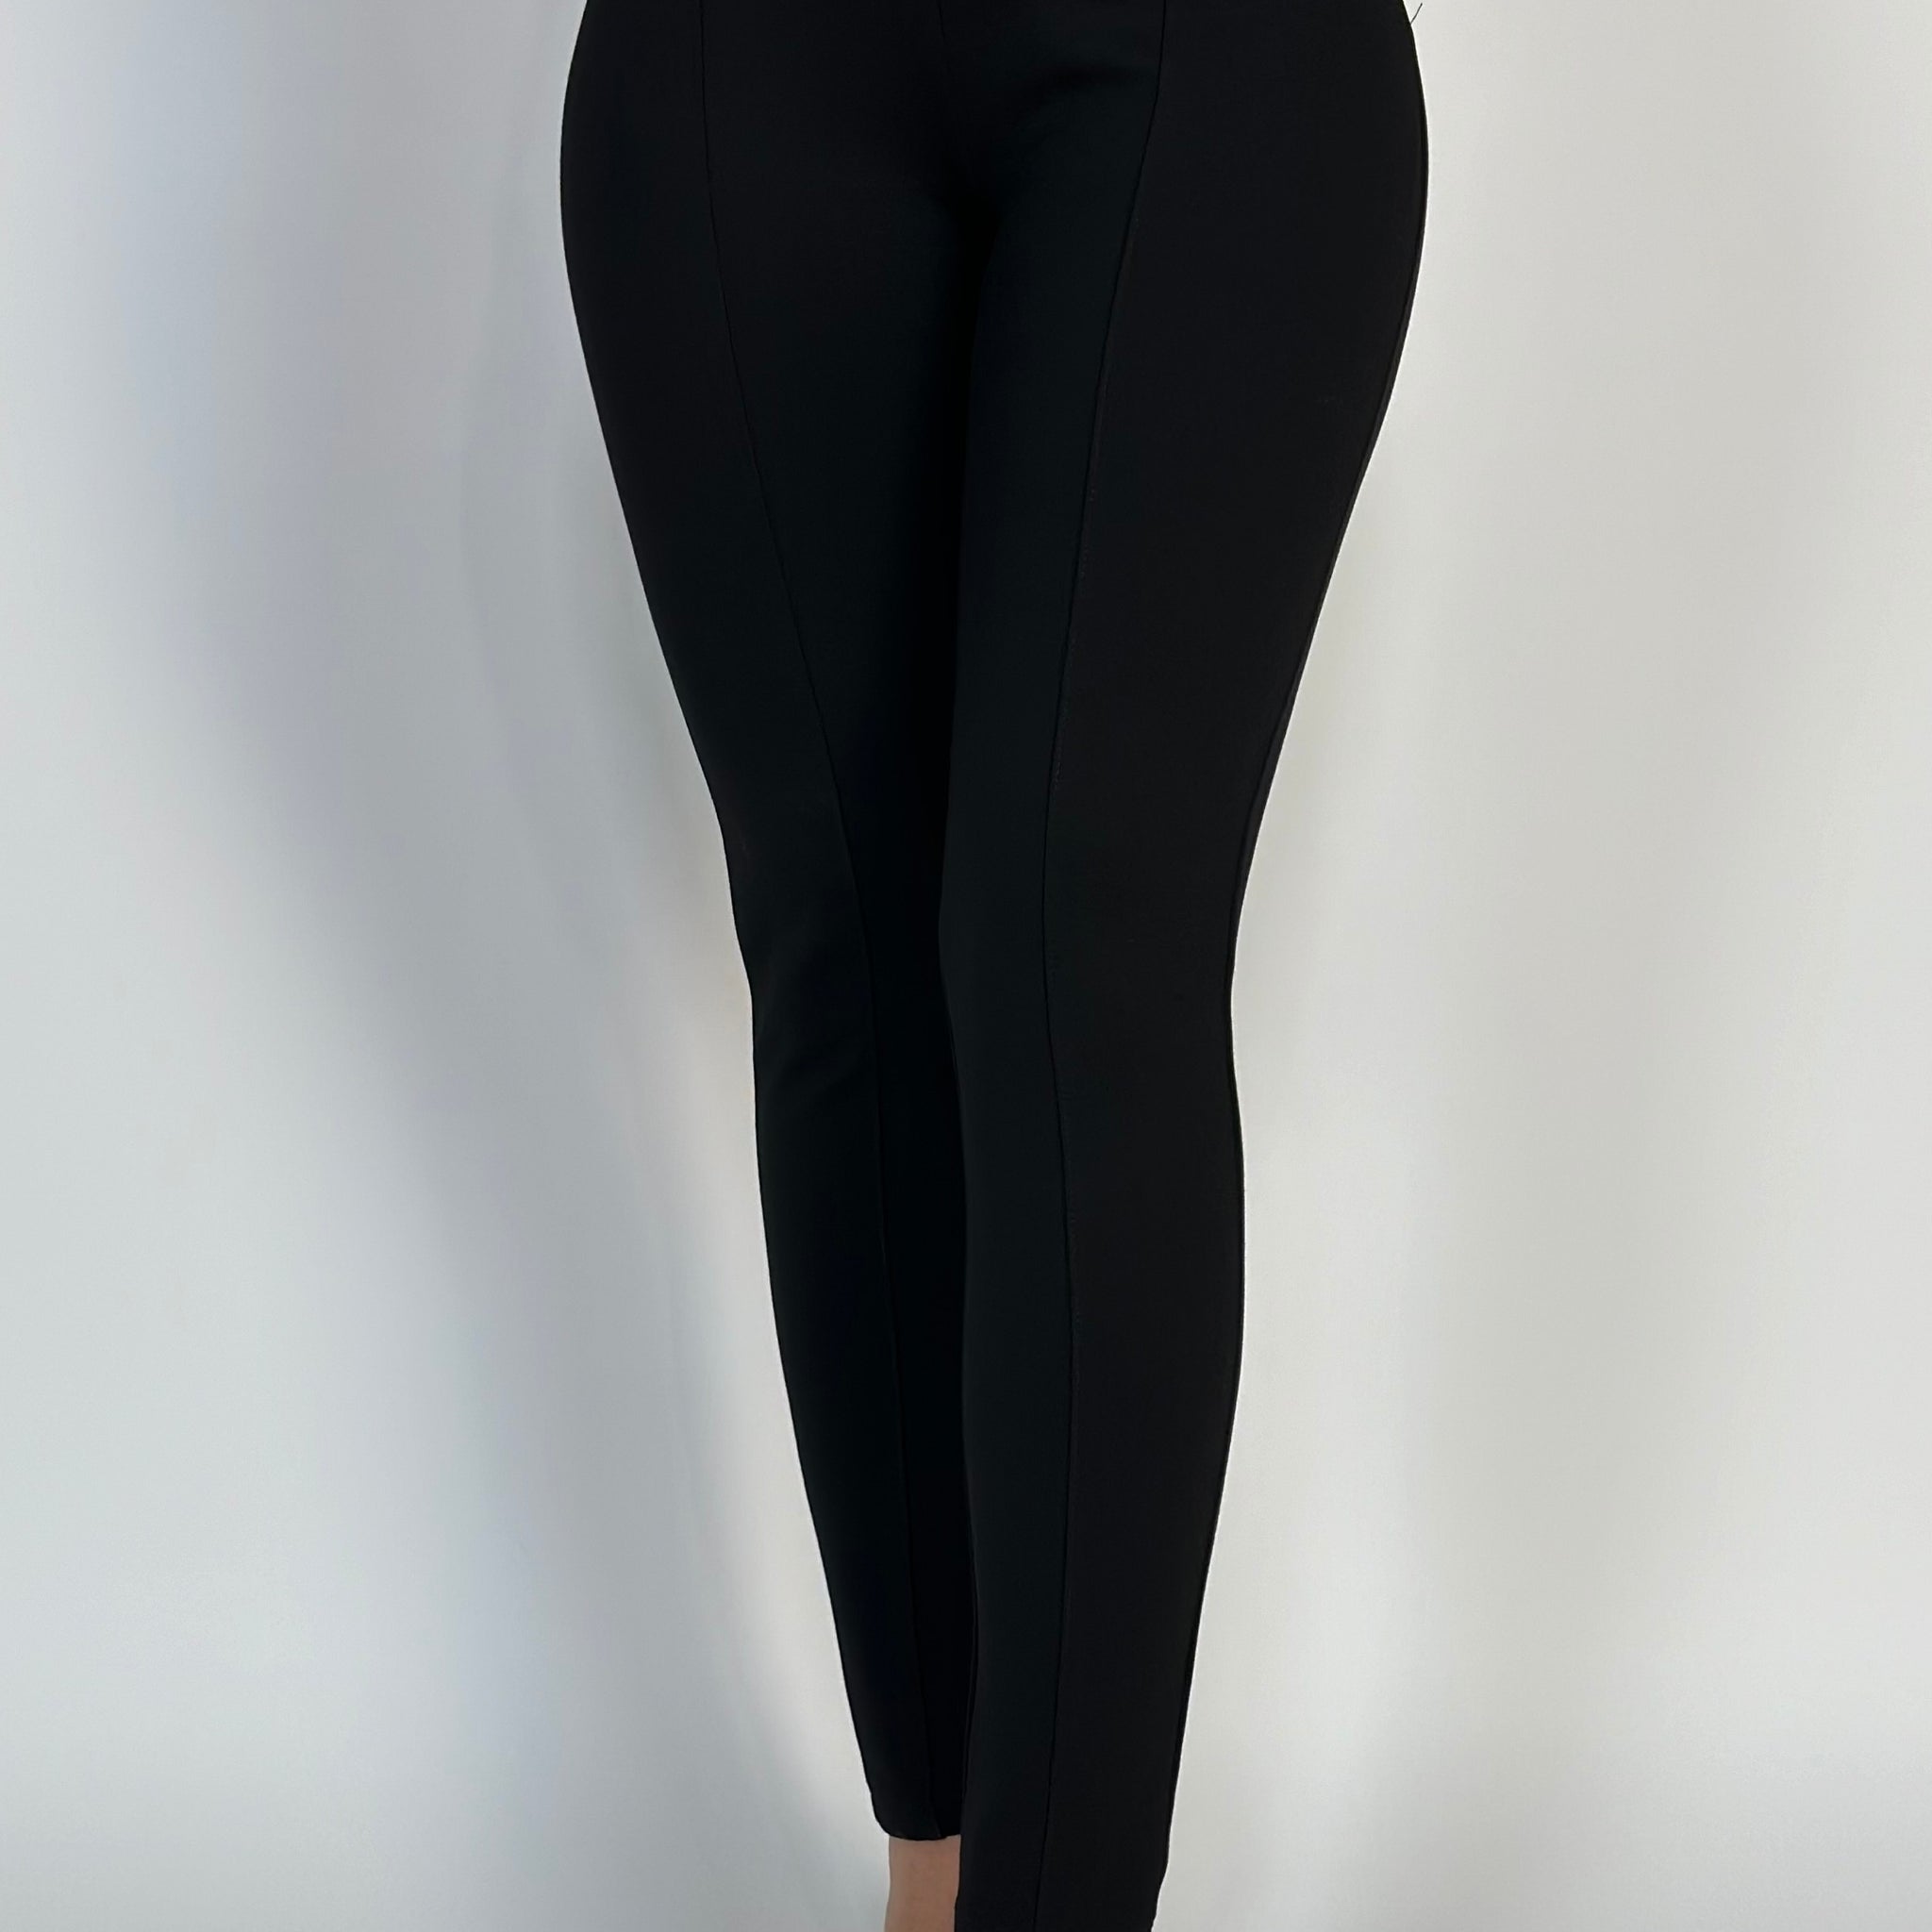 Pantaloni fashion model skinny cu talie inalta Y663-1